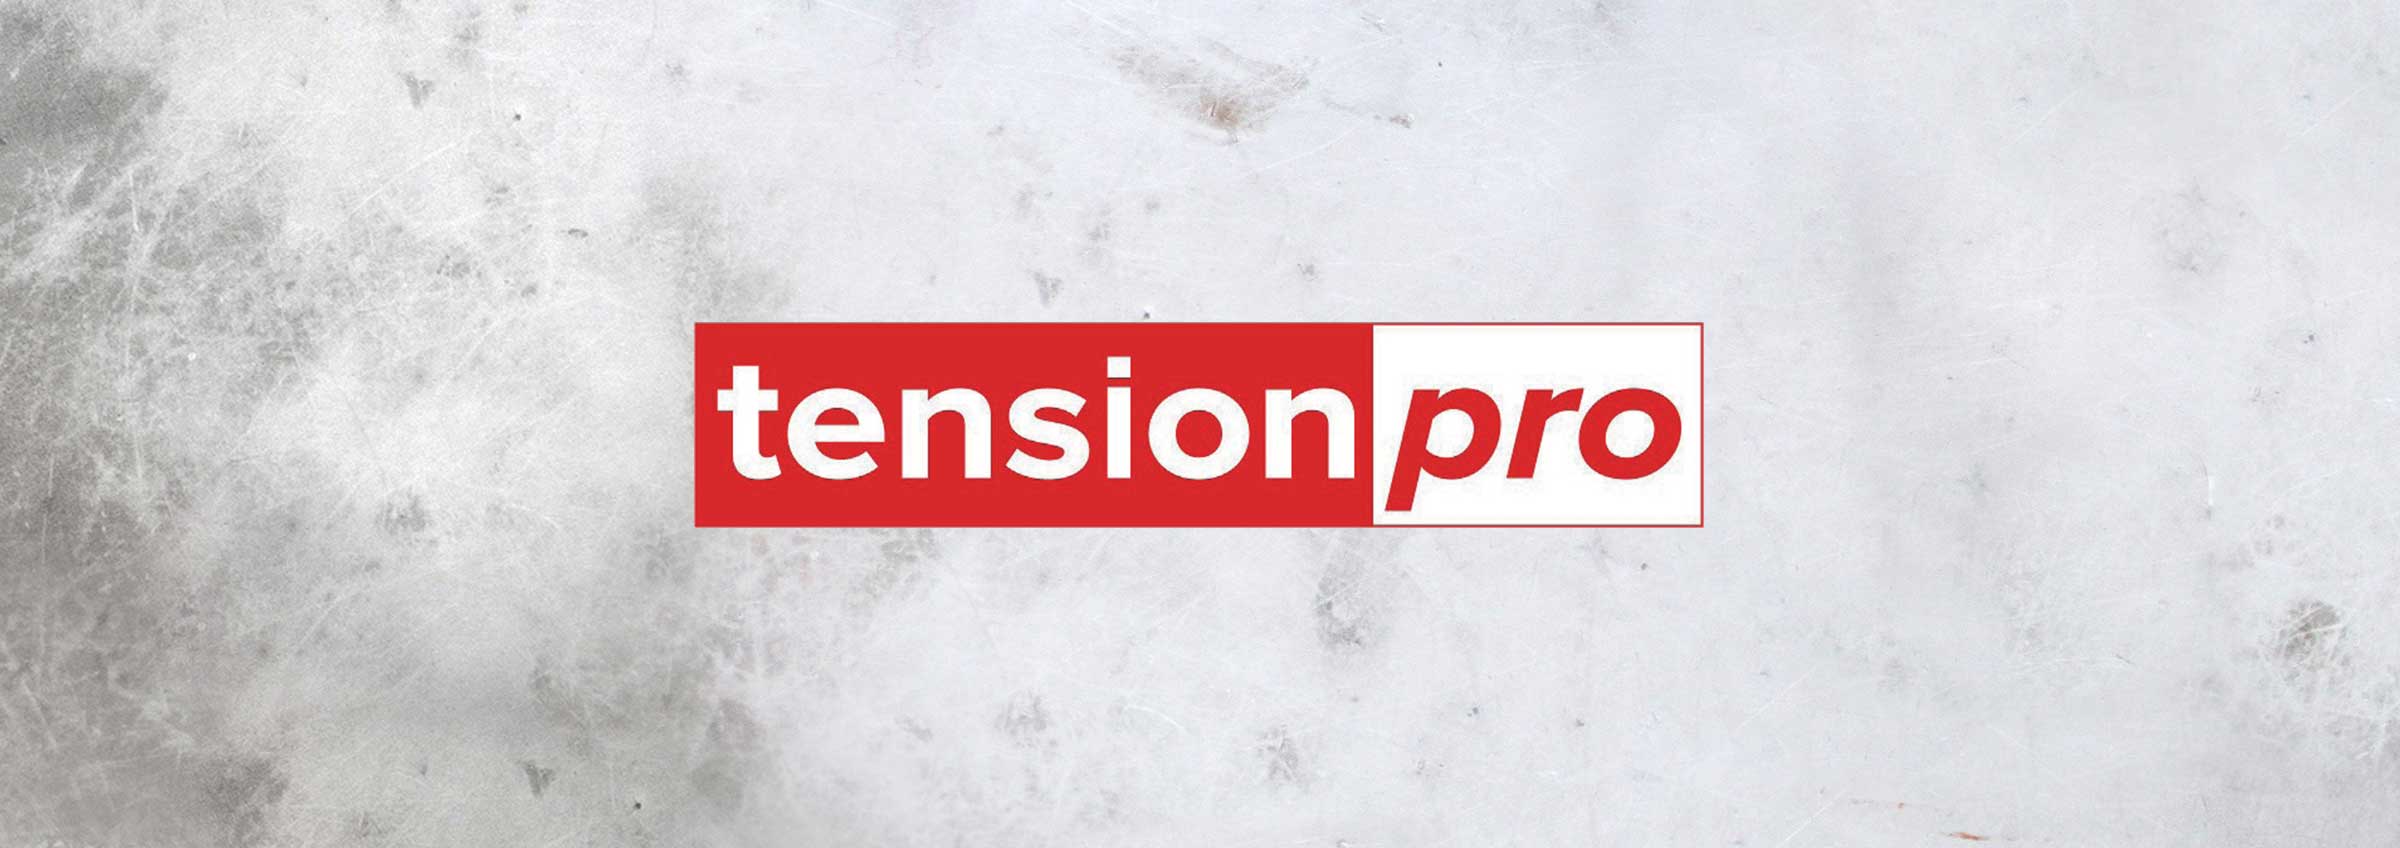 TensionPro header logolla varustettuna